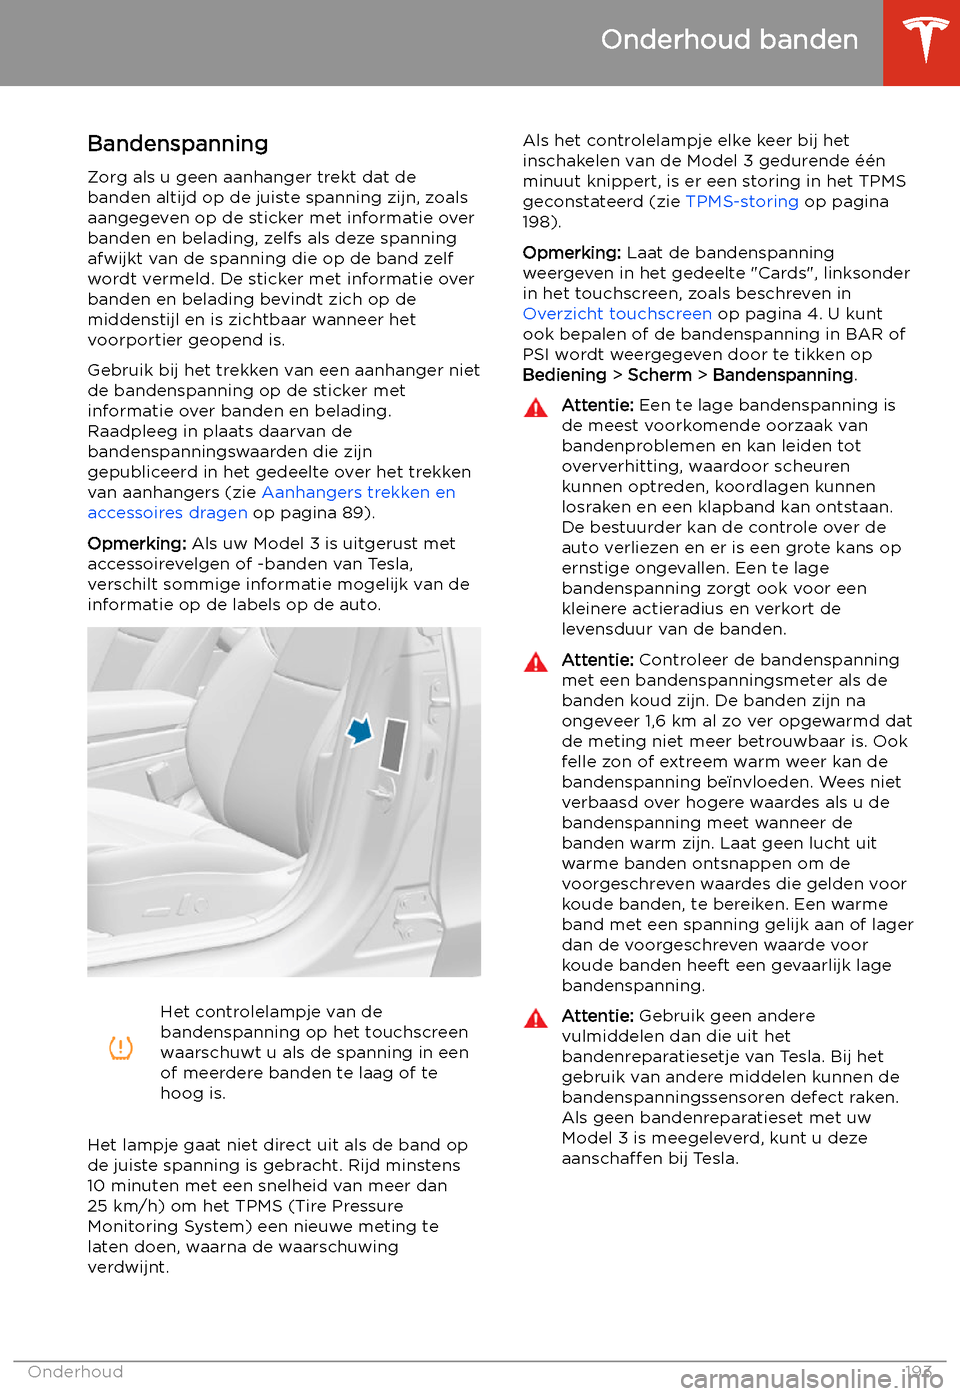 TESLA MODEL 3 2020  Handleiding (in Dutch) Onderhoud banden
Bandenspanning
Zorg als u geen aanhanger trekt dat de
banden altijd op de juiste spanning zijn, zoals aangegeven op de sticker met informatie over
banden en belading, zelfs als deze s